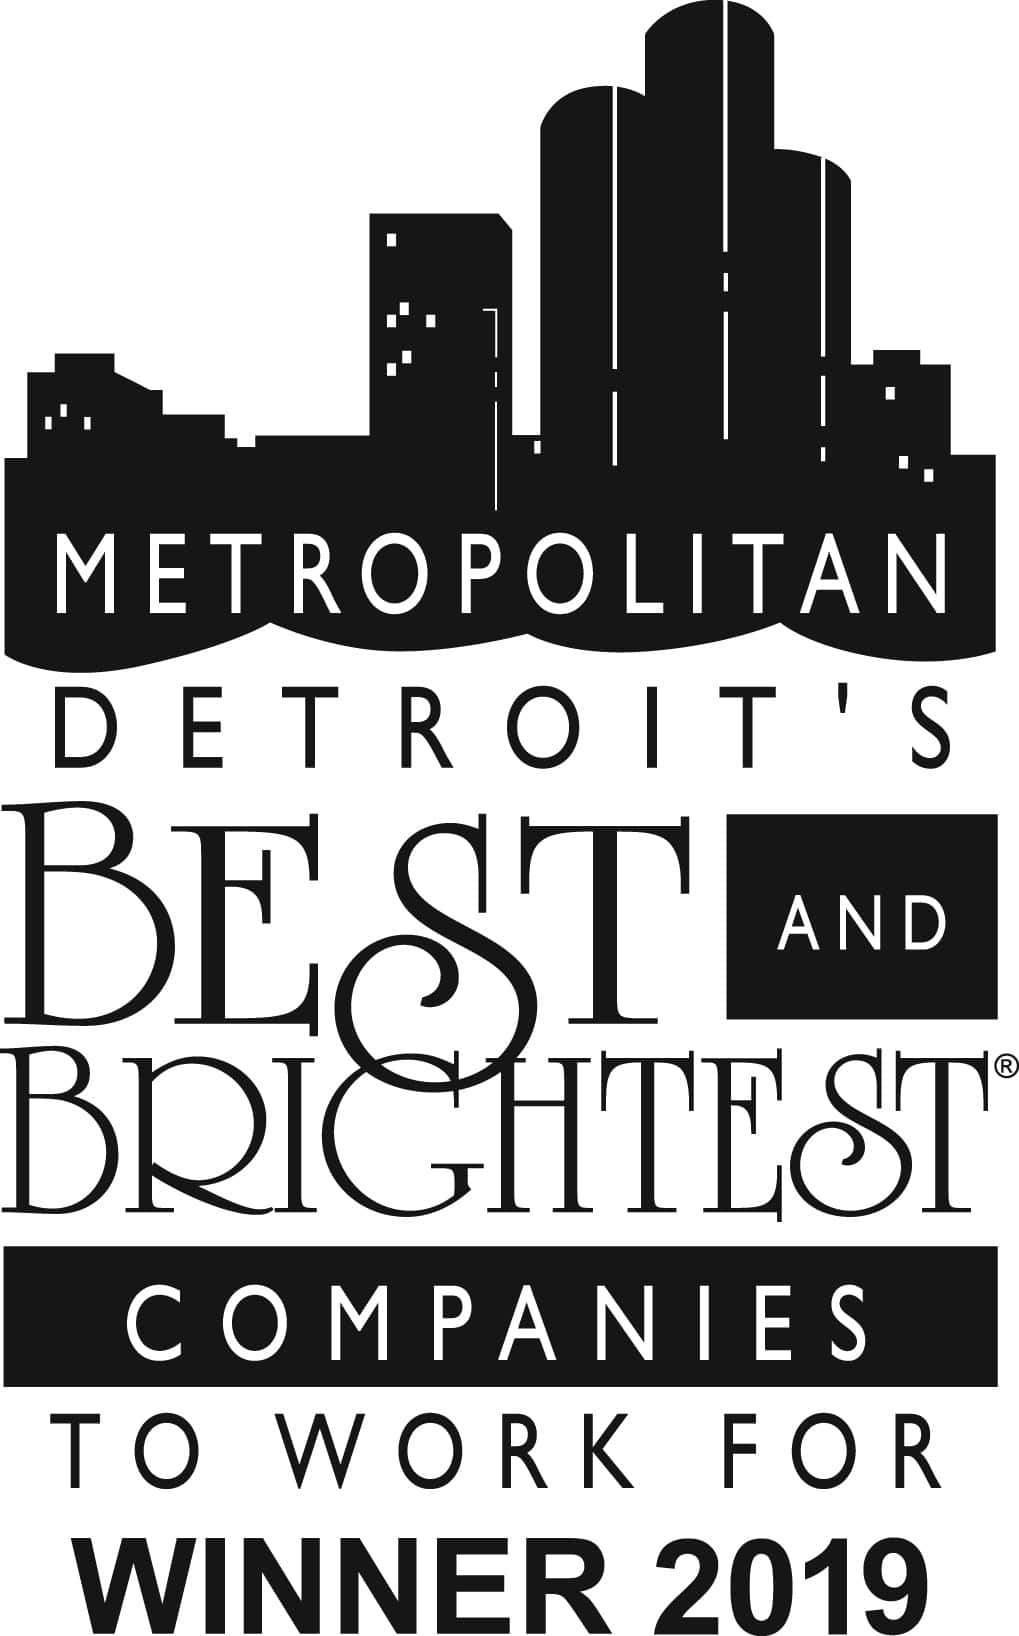 Detroit Best & Brightest 2019 logo